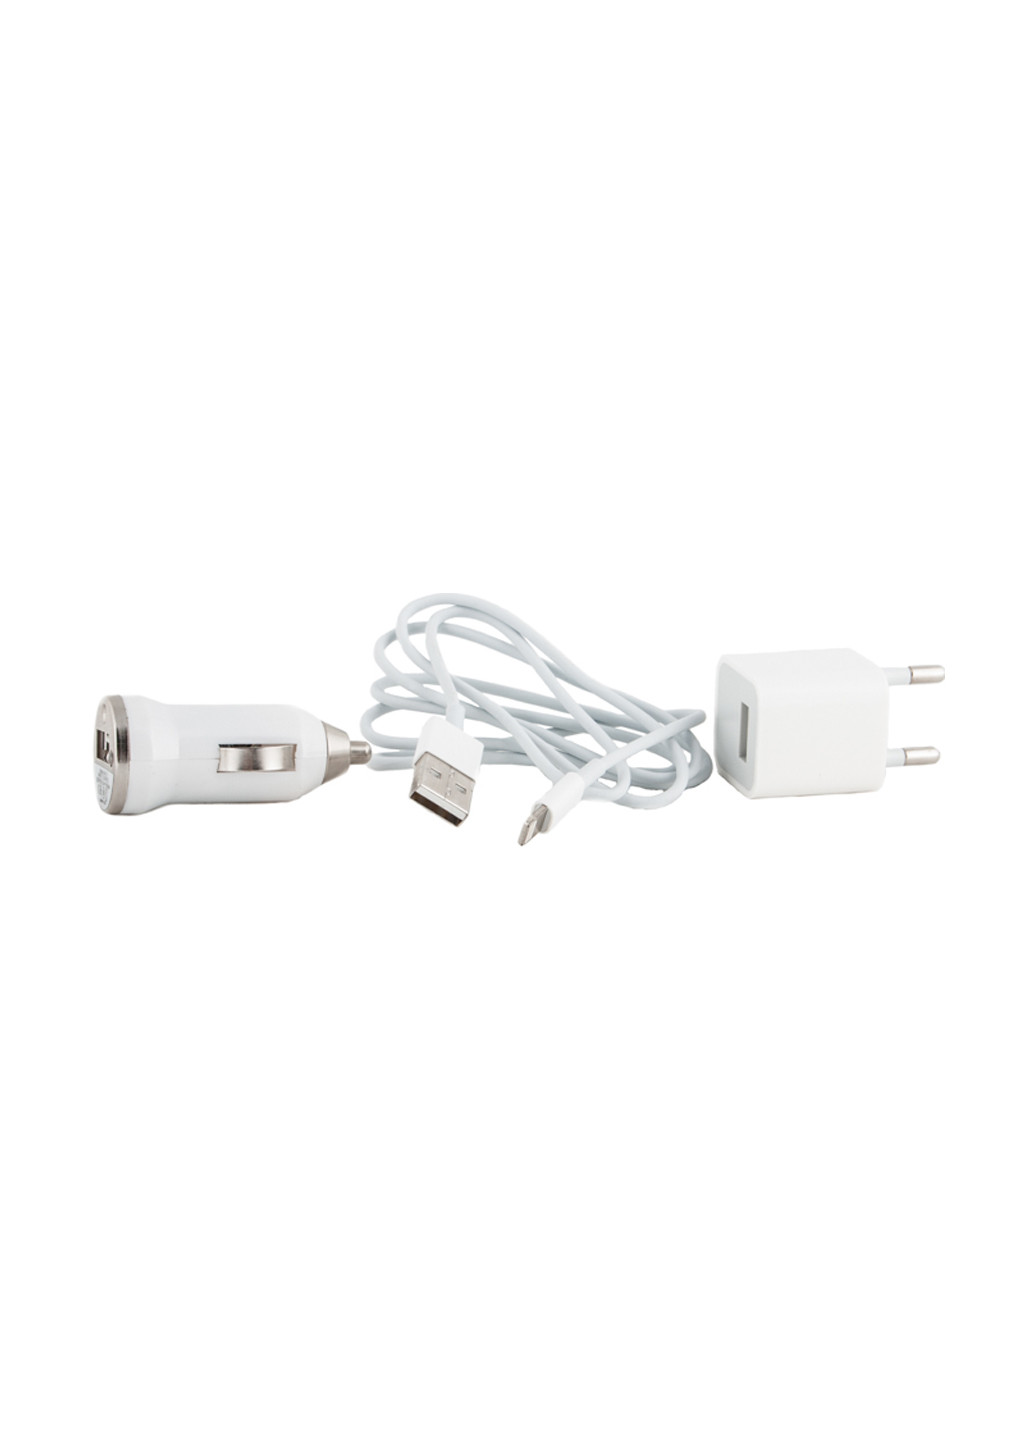 Зарядний пристрій USB - Lightning 12V + 220V + kab, 1A PowerPlant usb - lightning 12v+220v+kab, 1a (153984713)